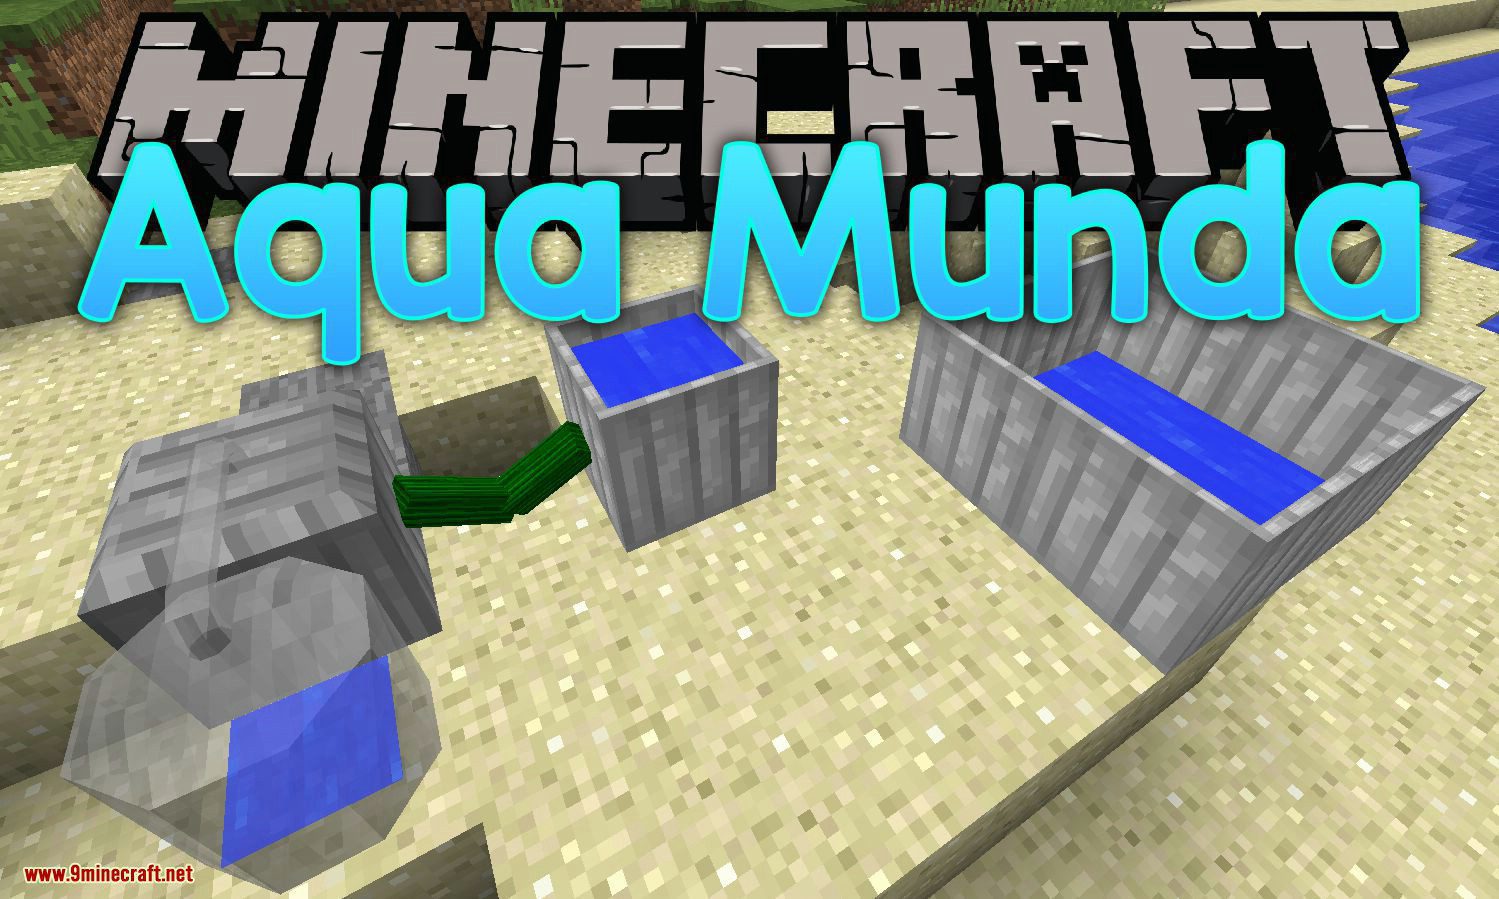 Aqua Munda mod for minecraft logo